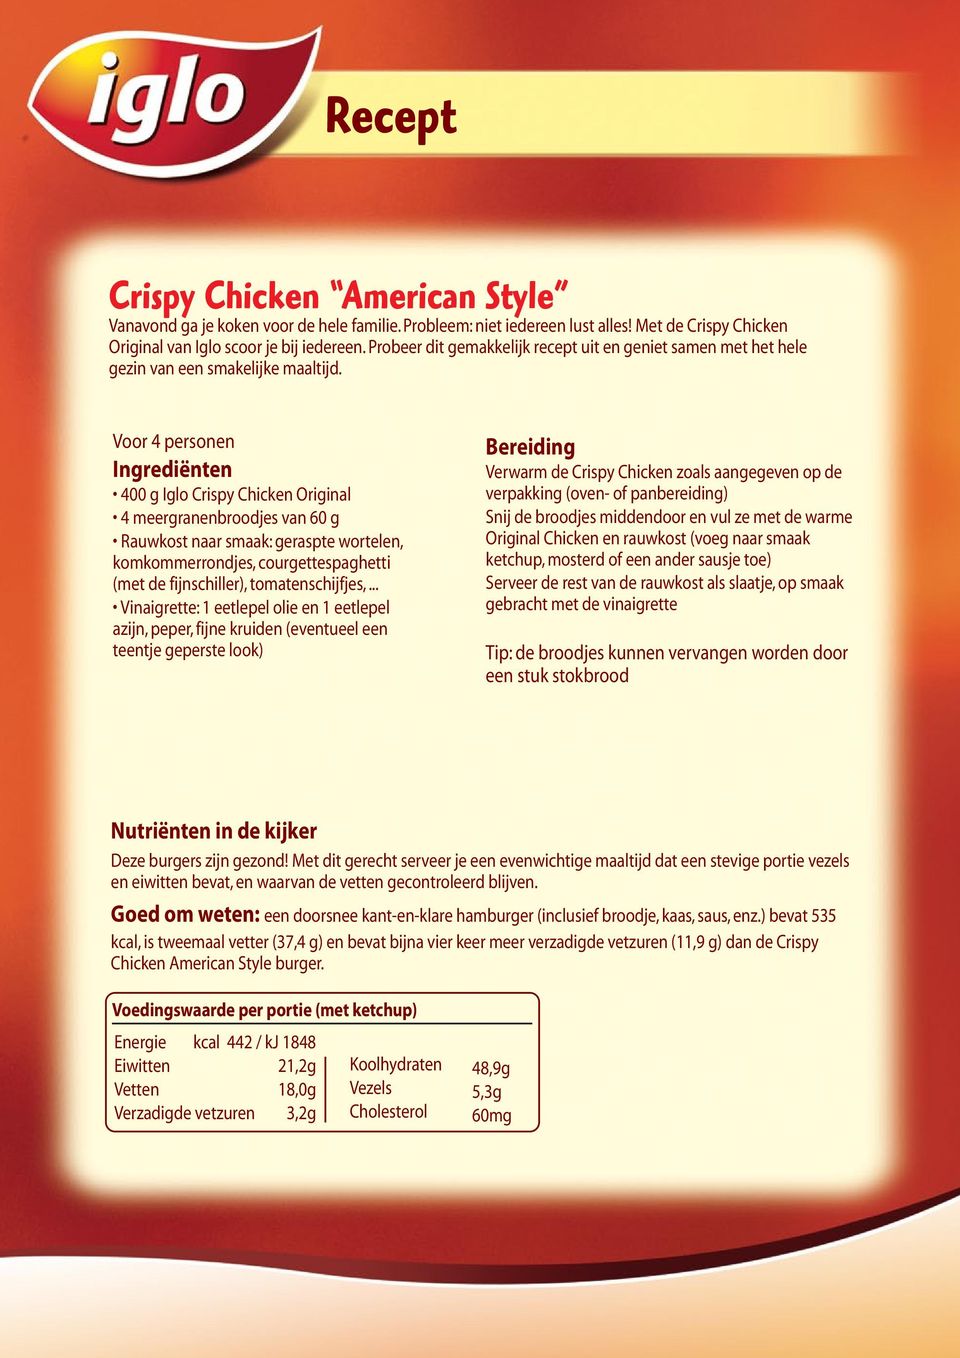 Voor 4 personen Ingrediënten 400 g Iglo Crispy Chicken Original 4 meergranenbroodjes van 60 g Rauwkost naar smaak: geraspte wortelen, komkommerrondjes, courgettespaghetti (met de fijnschiller),